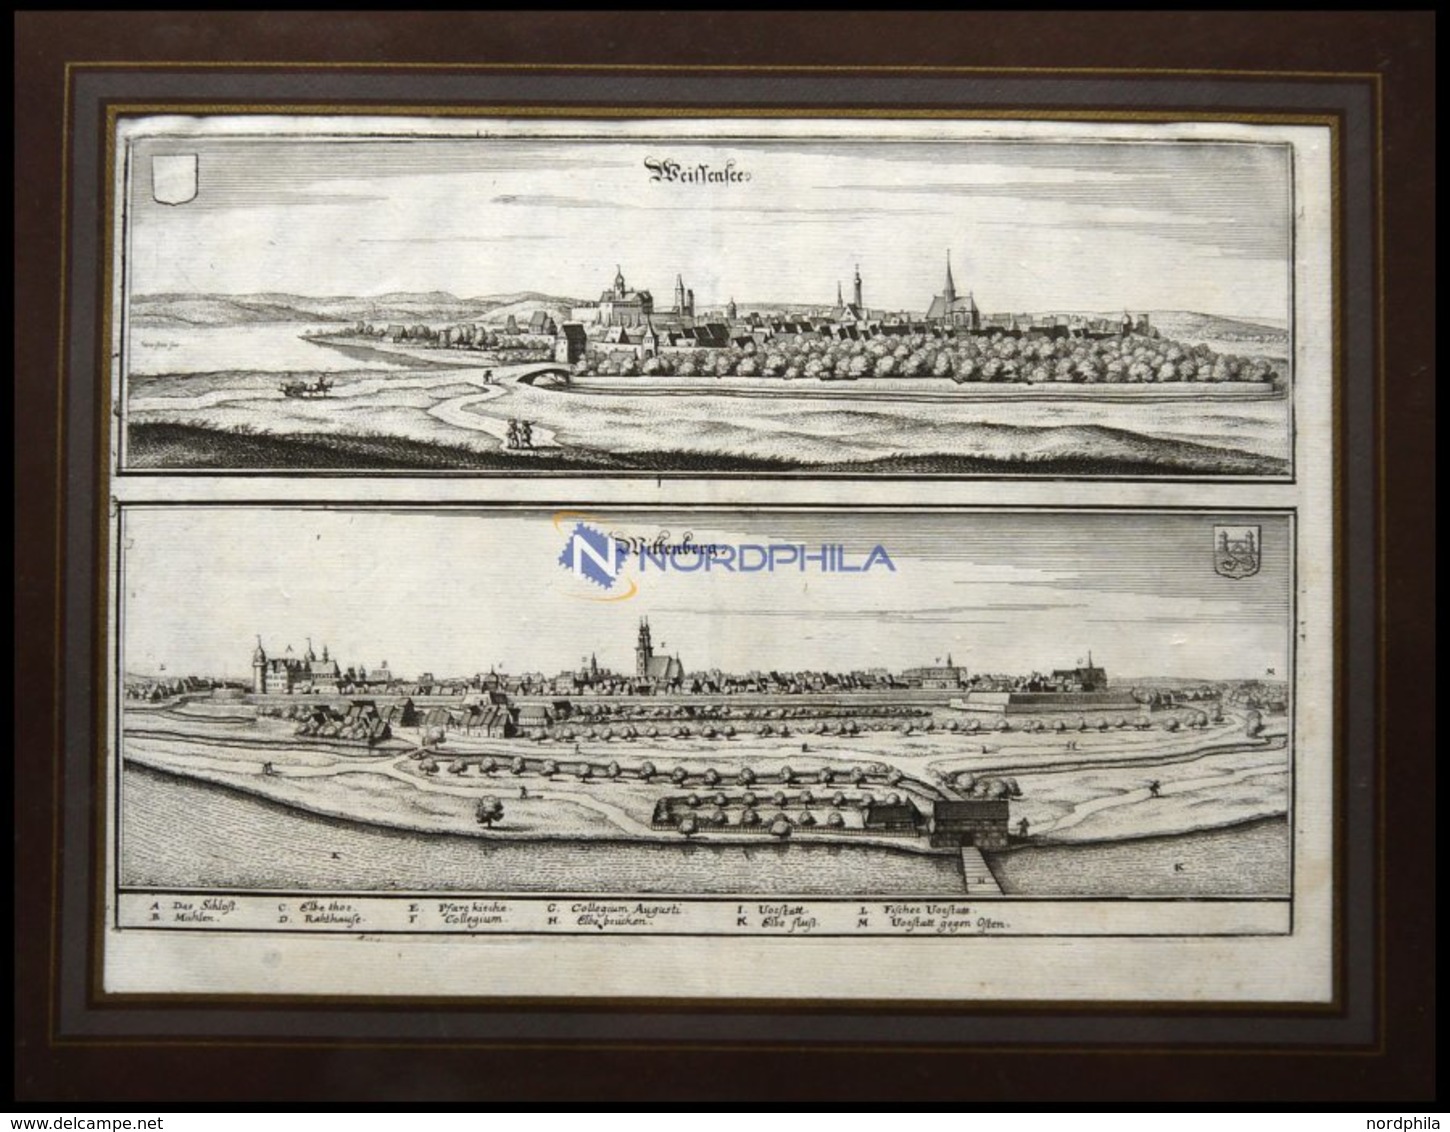 WEISSENSEE Und WITTENBERG, 2 Gesamtansichten Auf Einem Blatt, Kupferstich Von Merian Um 1645 - Lithographies